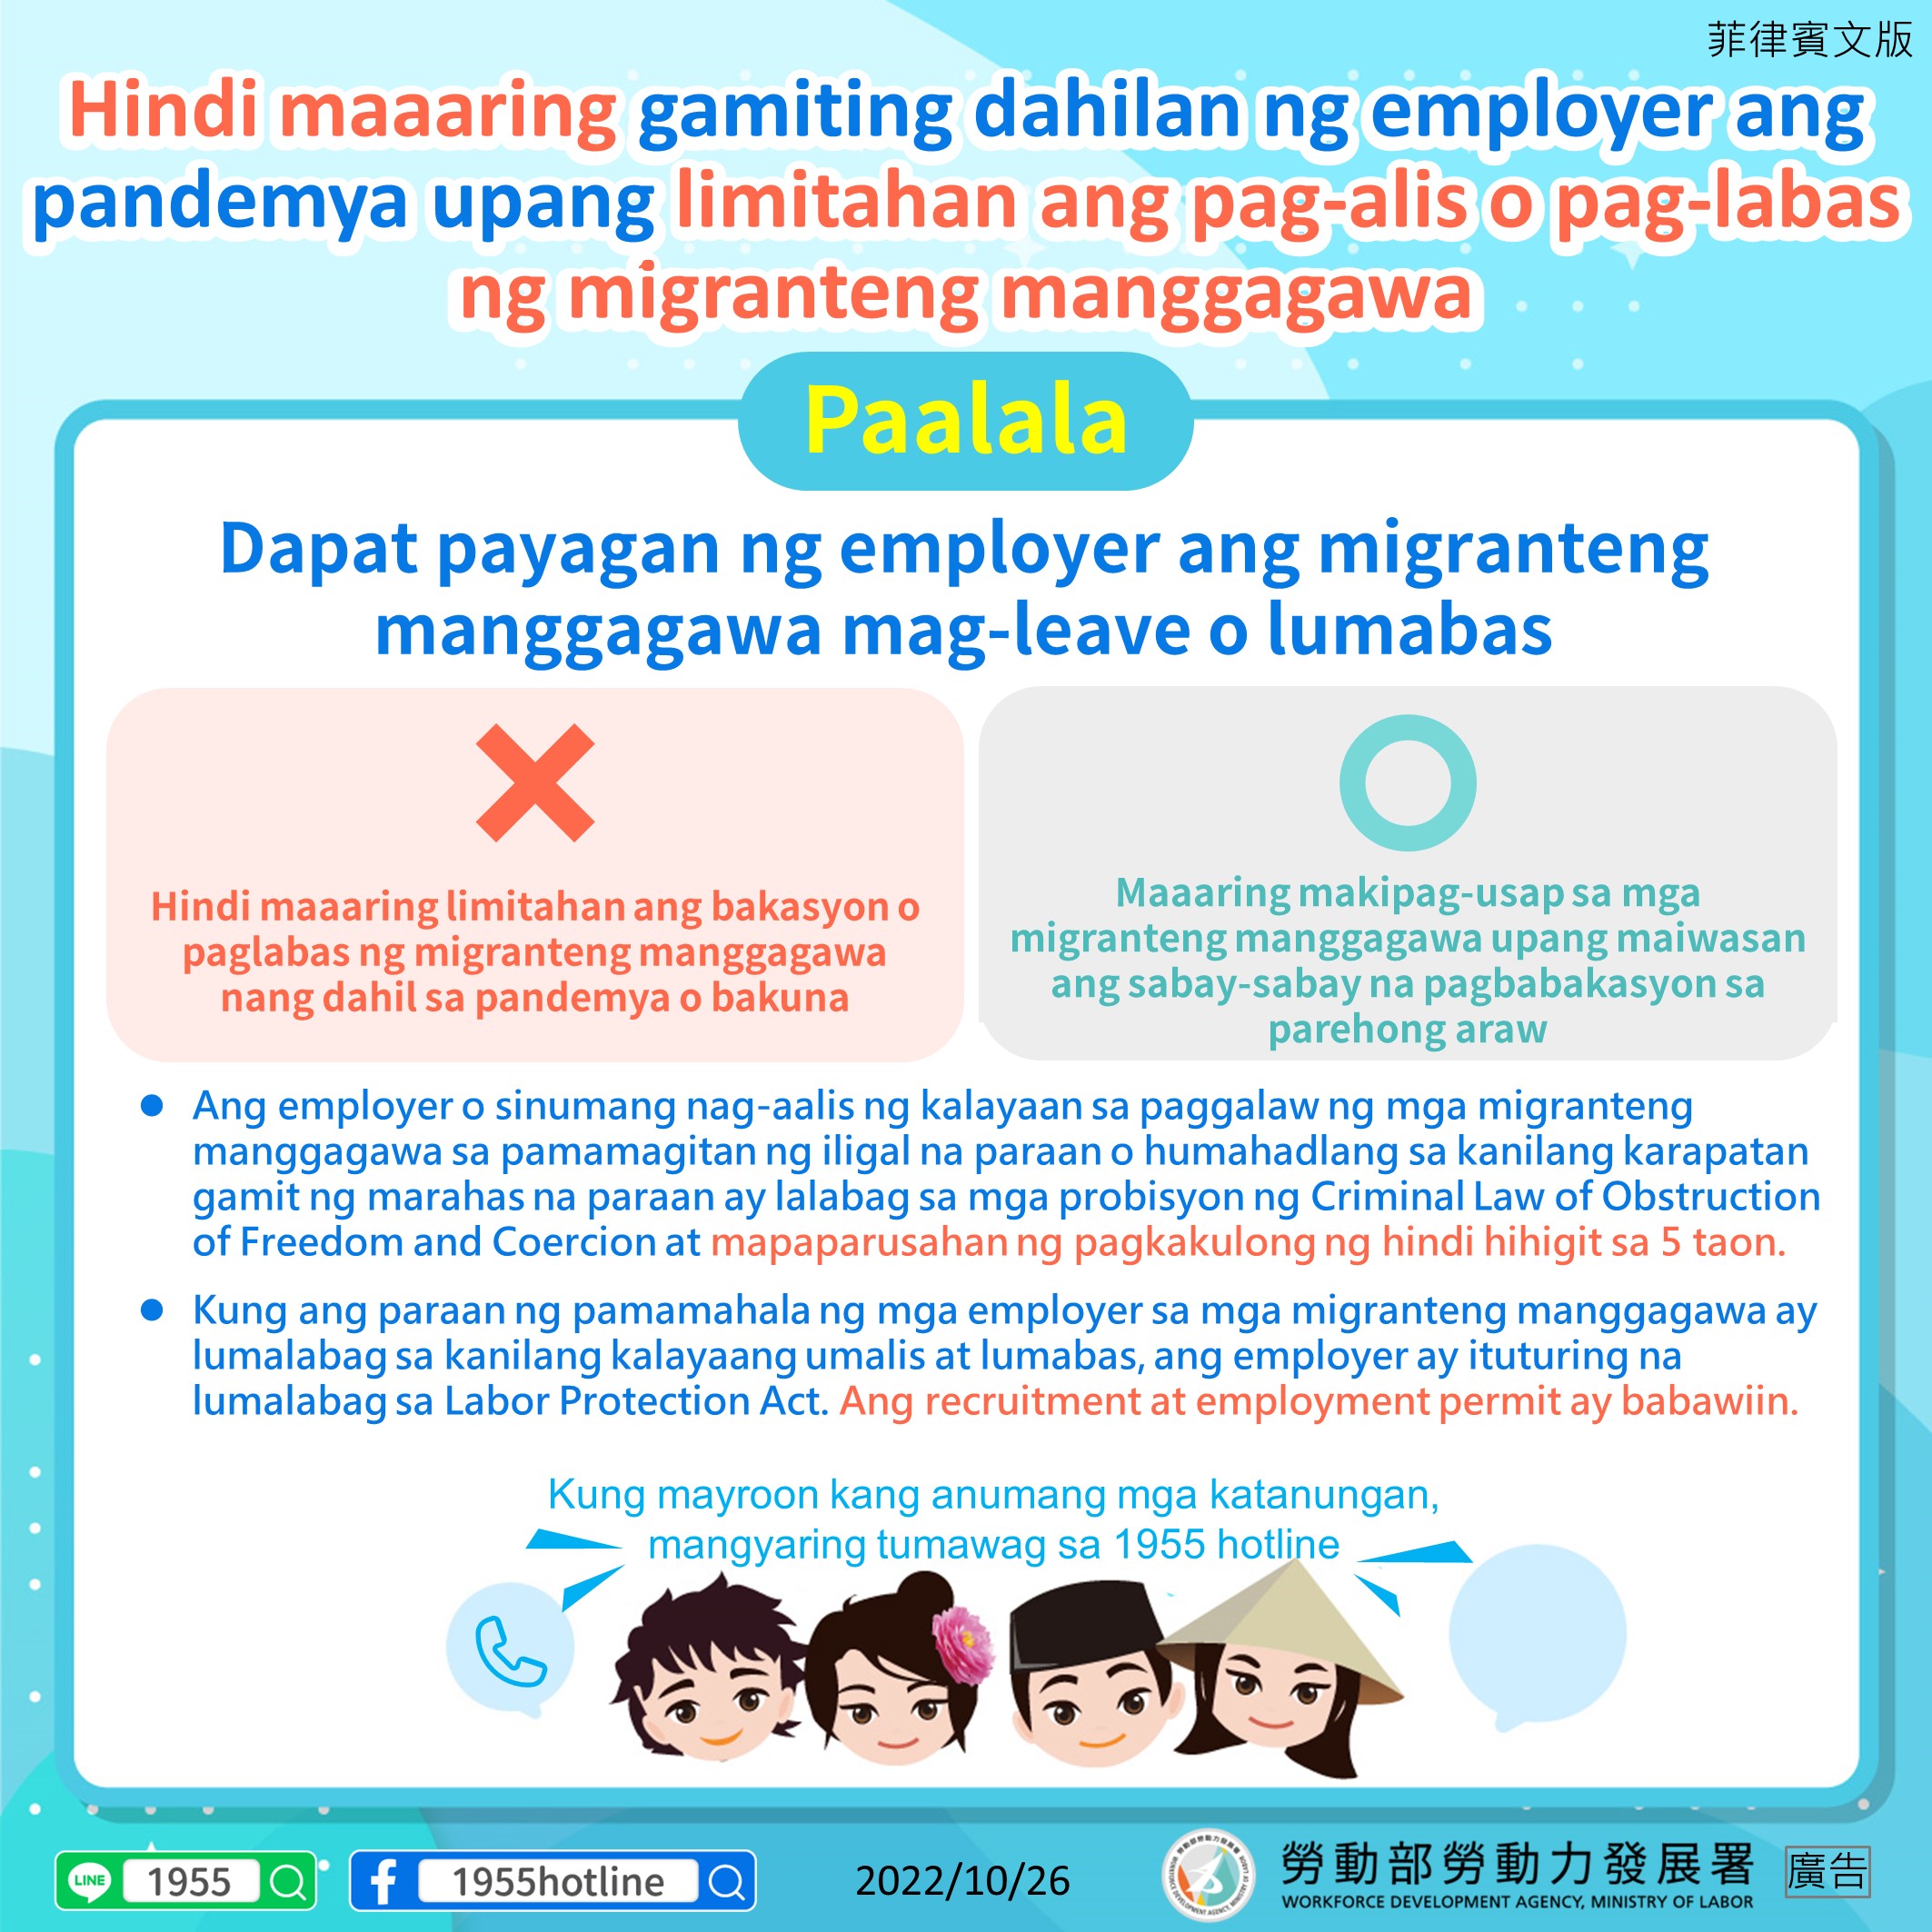 雇主不得因疫情為由限制移工放假或外出-菲律賓文.JPG